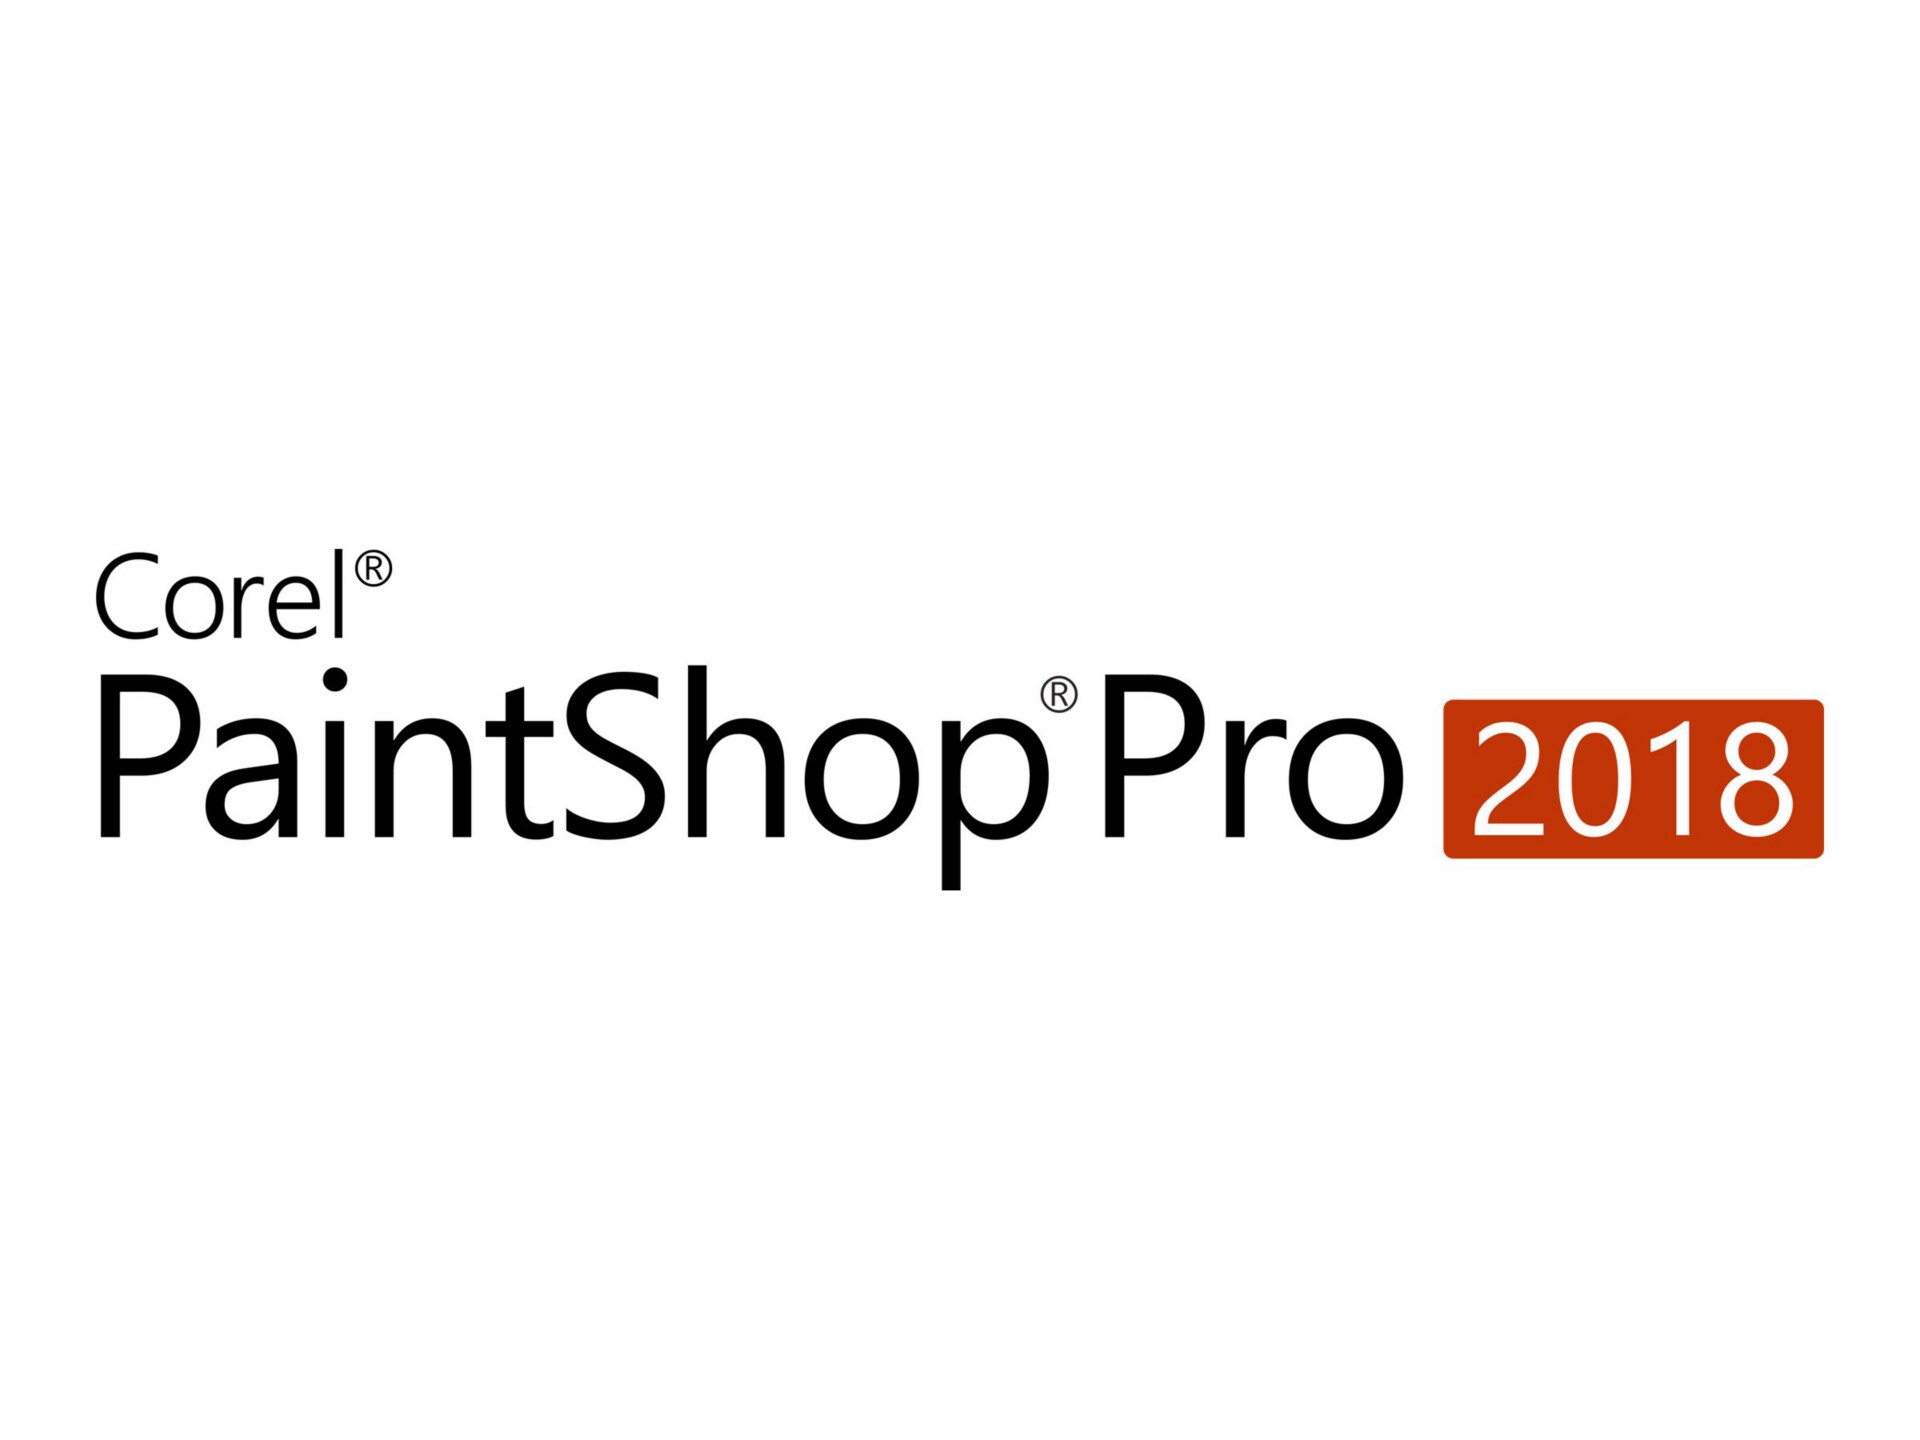 Corel PaintShop Pro 2018 - license - 1 user